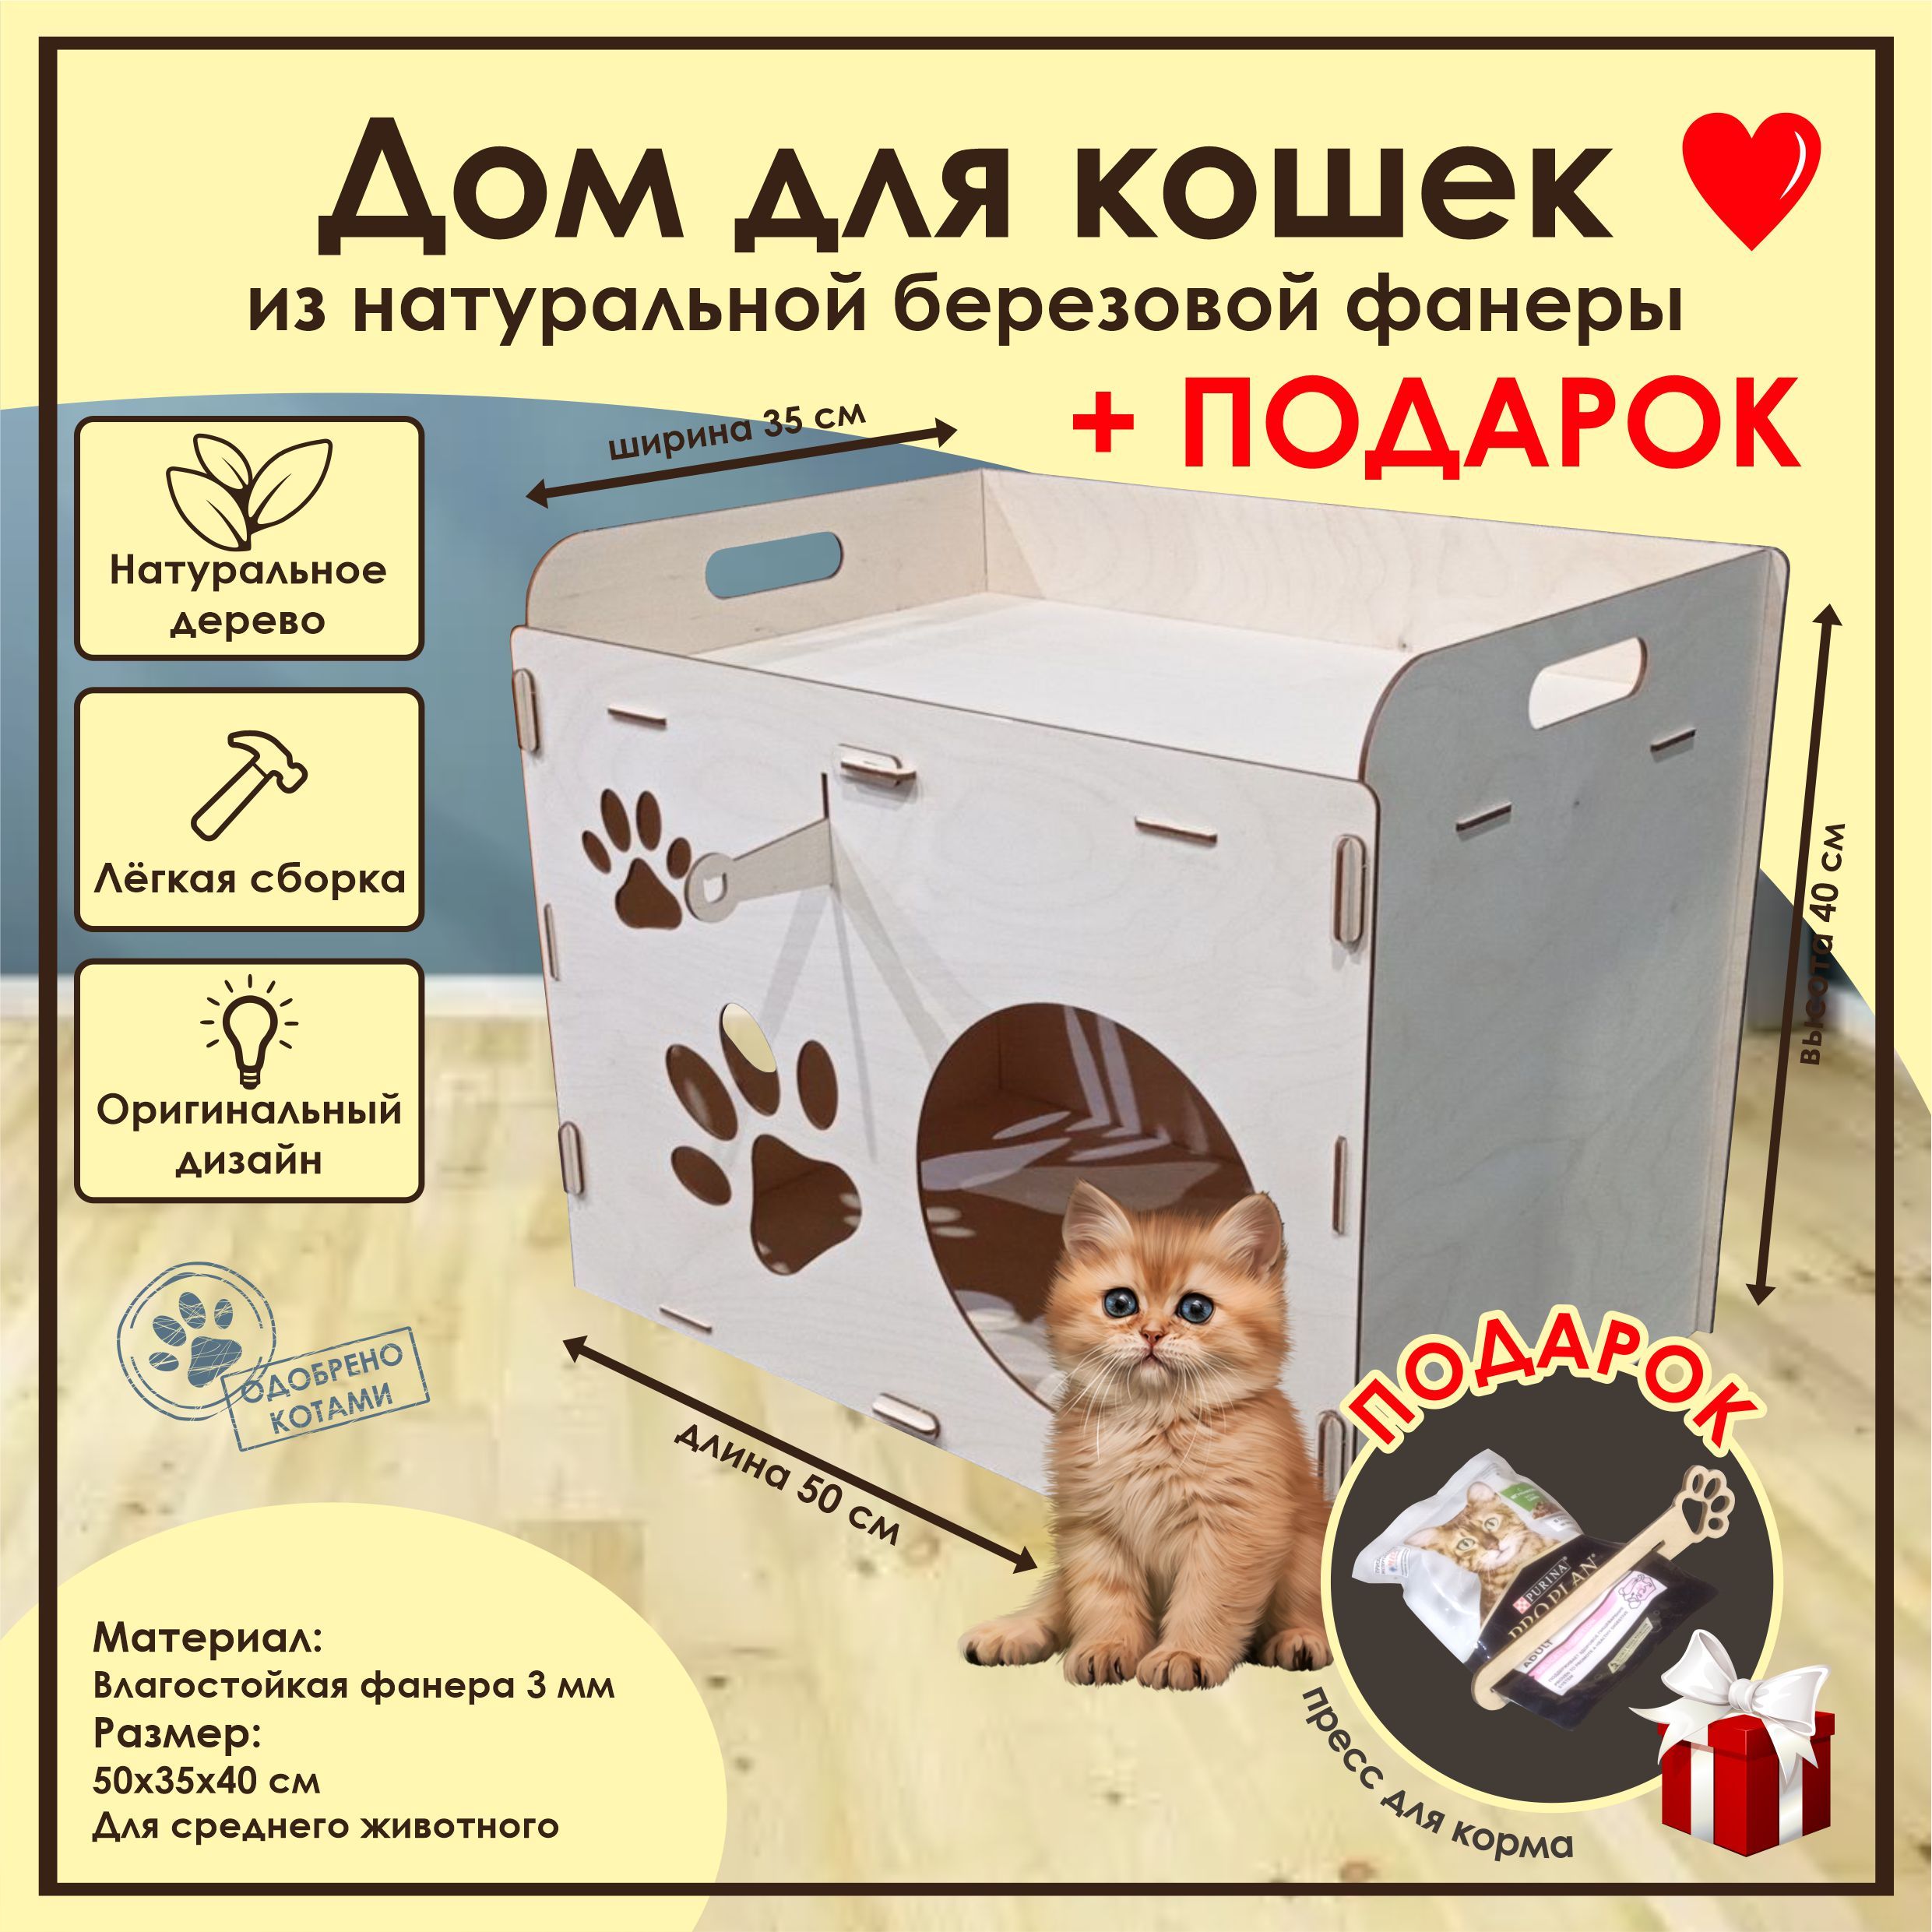 Домики для кошек своими руками: фотоподборка — kormstroytorg.ru